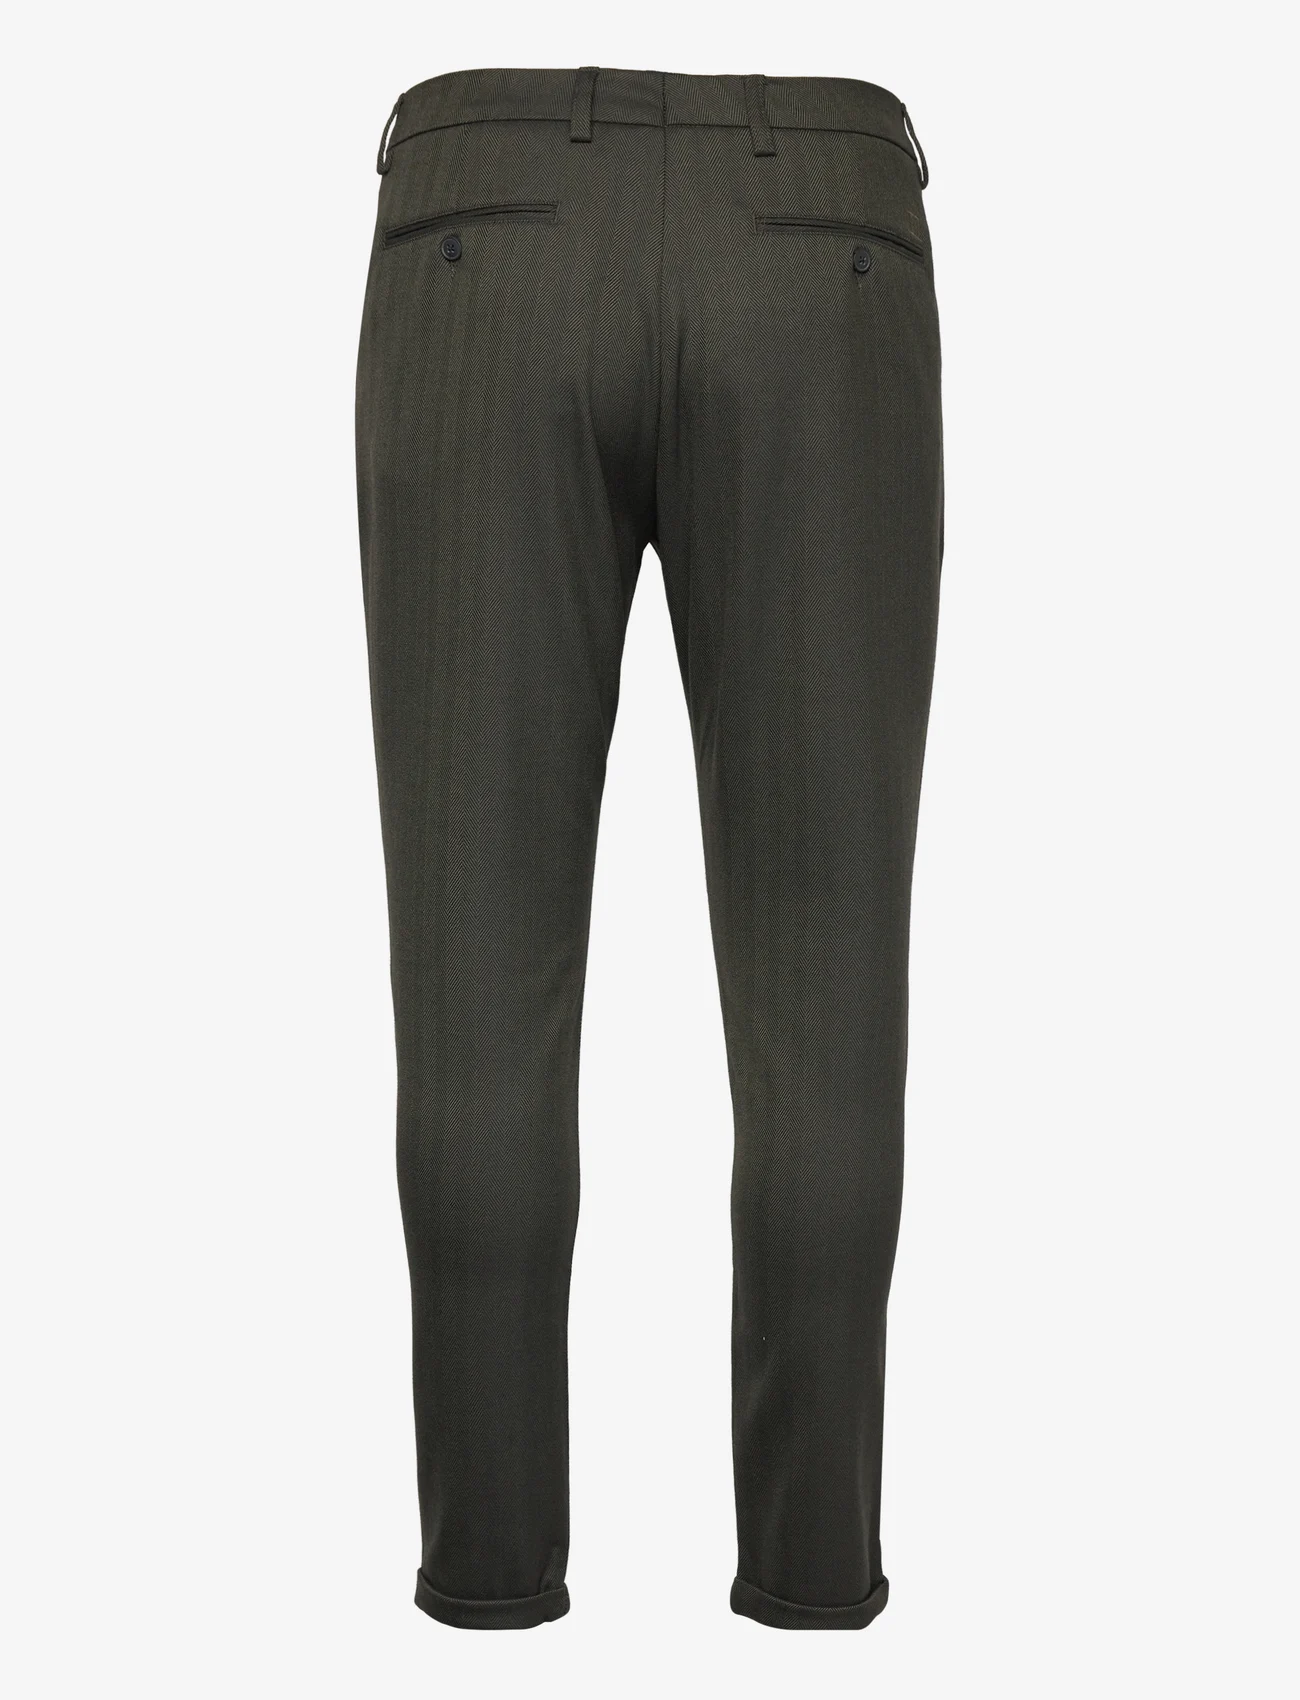 Les Deux - Como Herringbone Suit Pants - pantalons - deep forest/black - 1